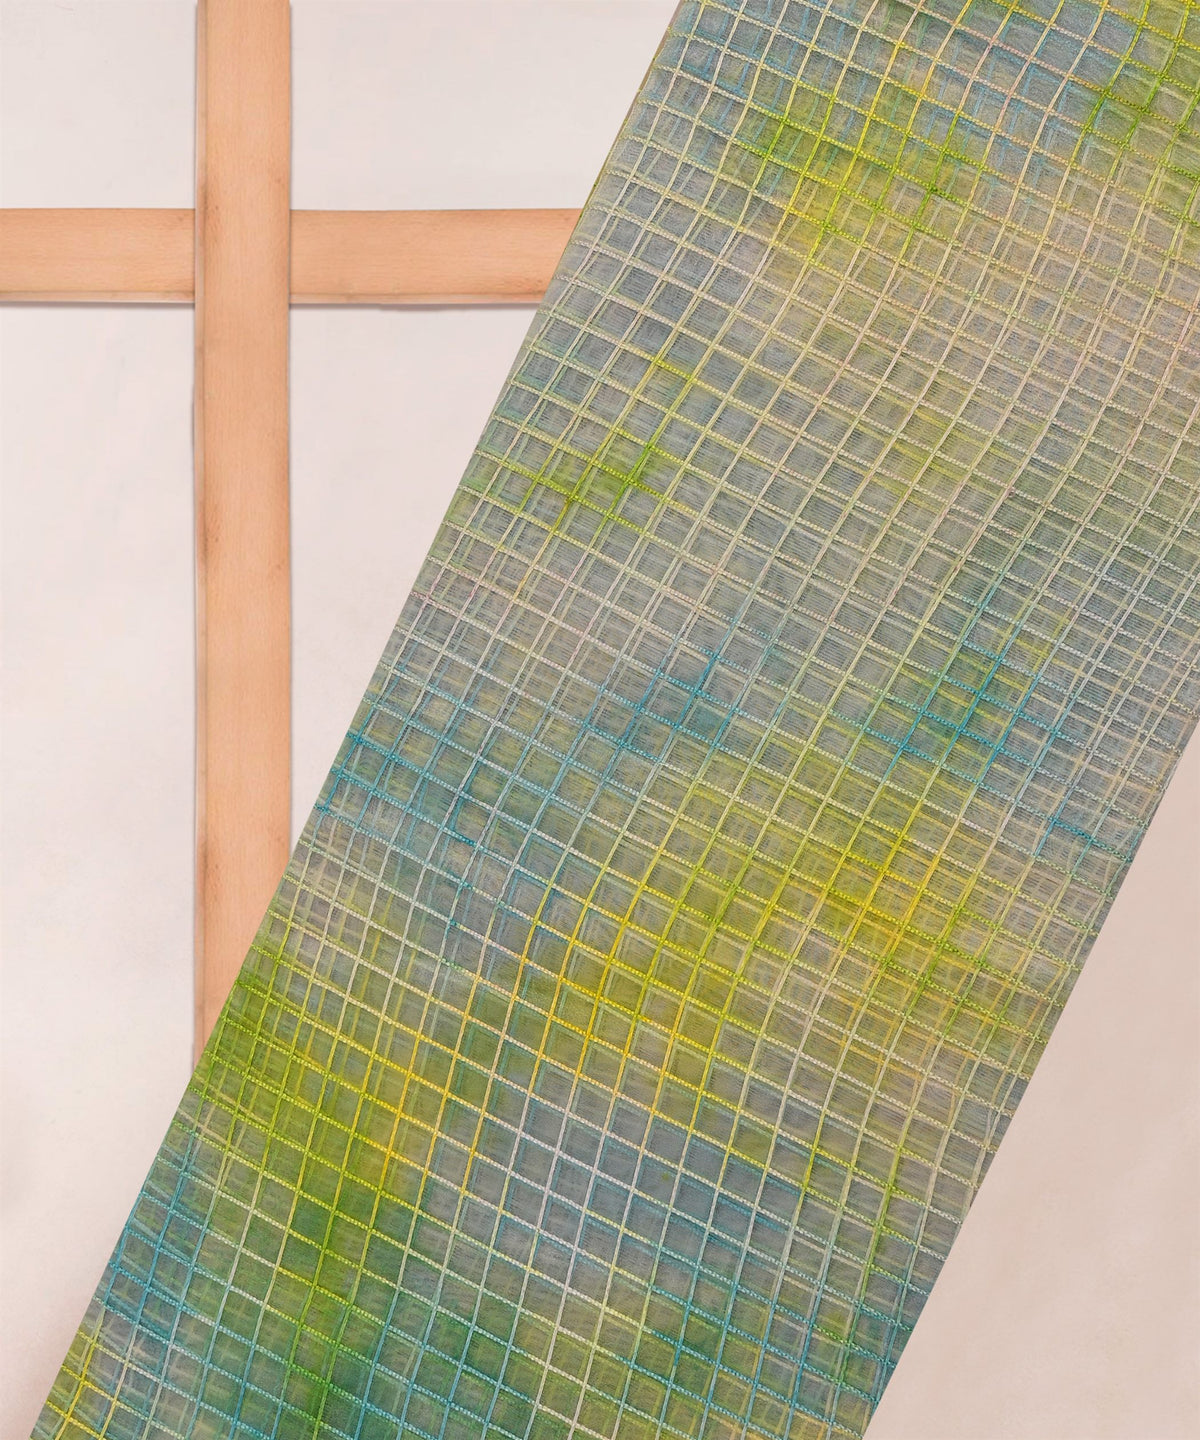 Pista Green Shibori Print Organza Fabric with Checks